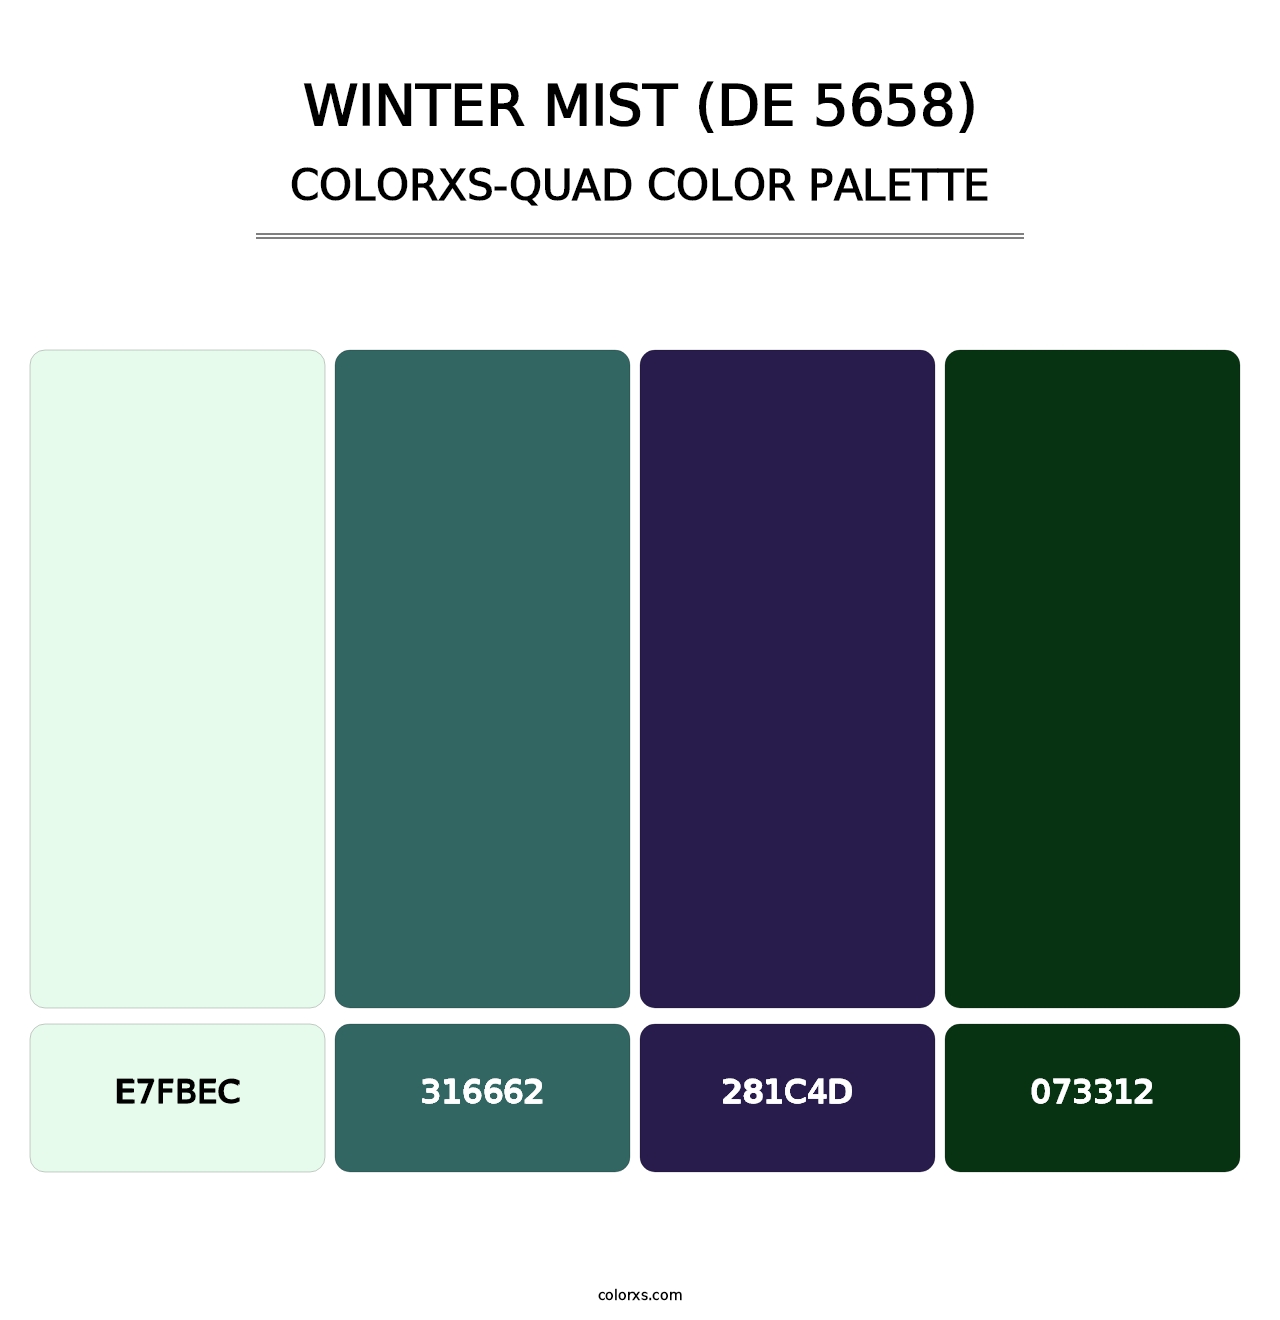 Winter Mist (DE 5658) - Colorxs Quad Palette